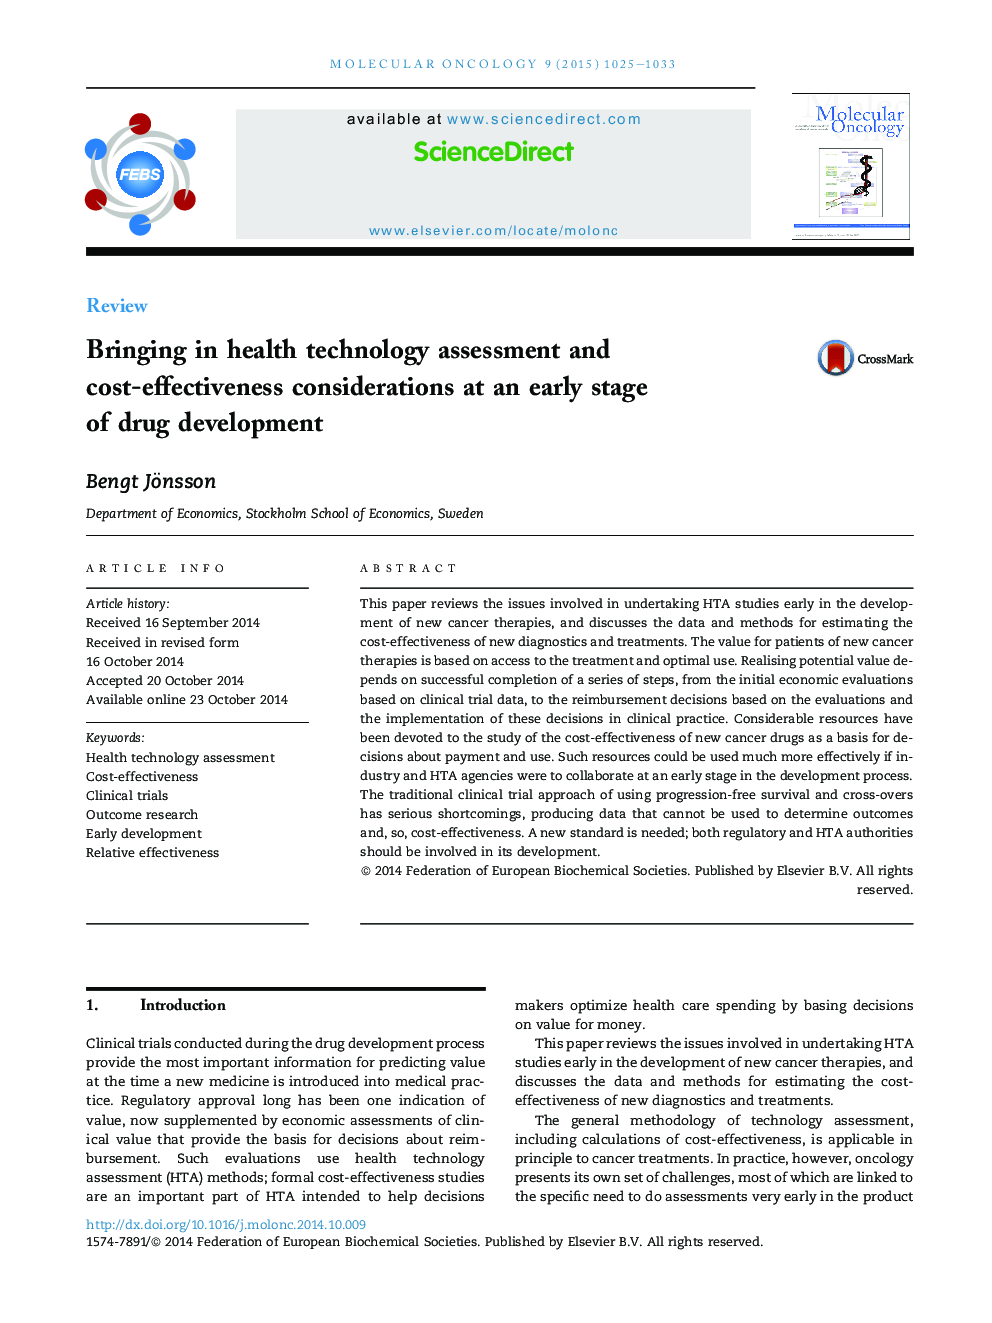 ارزیابی تکنولوژی بهداشت و ارزیابی هزینه های درمانی در مراحل اولیه توسعه دارو 